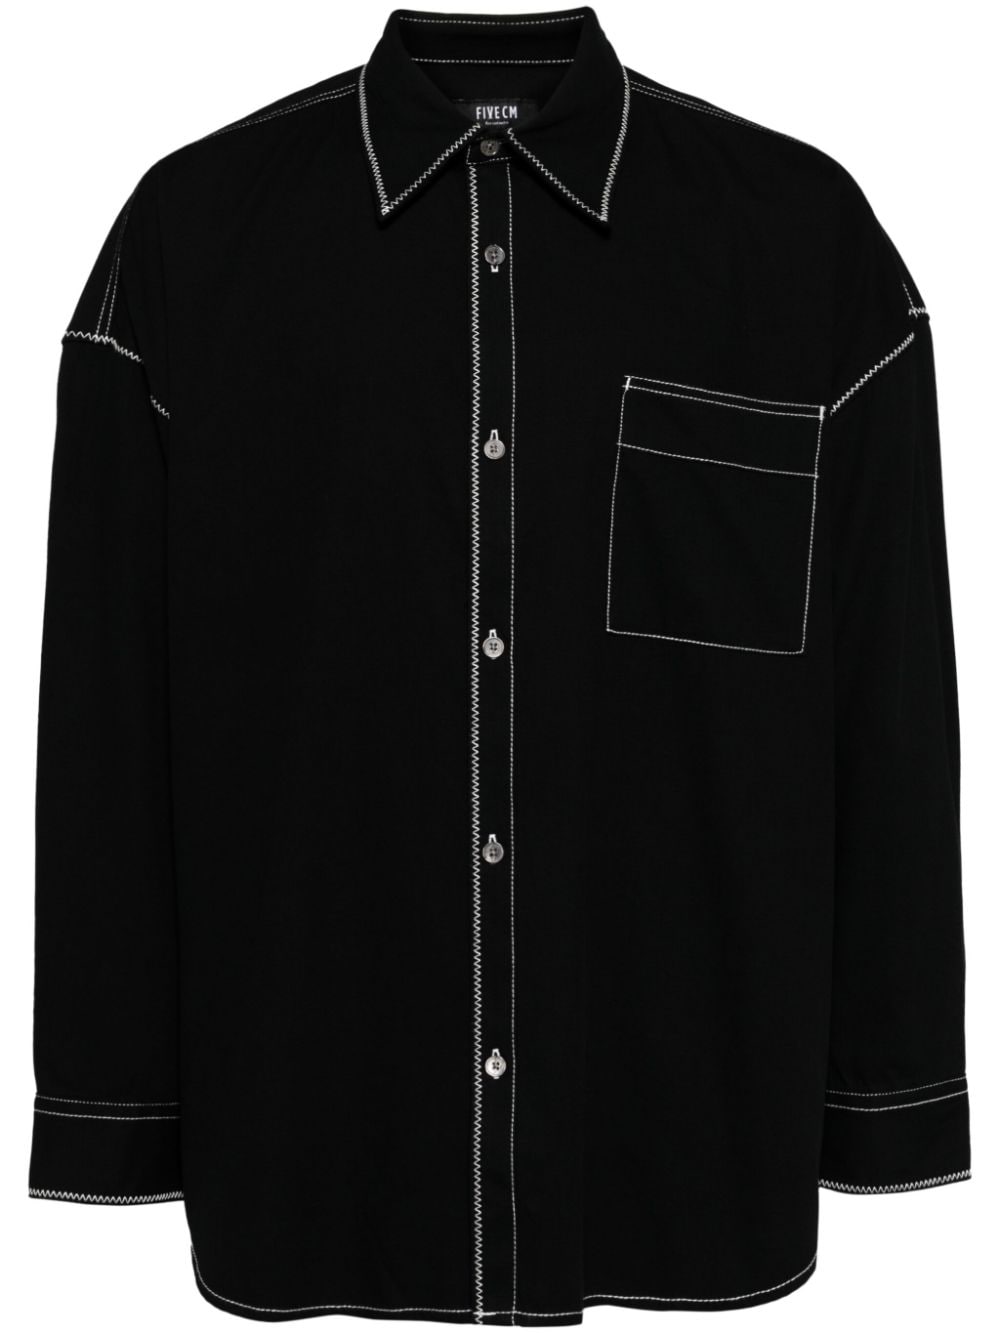 FIVE CM contrast-stitching shirt - Black von FIVE CM